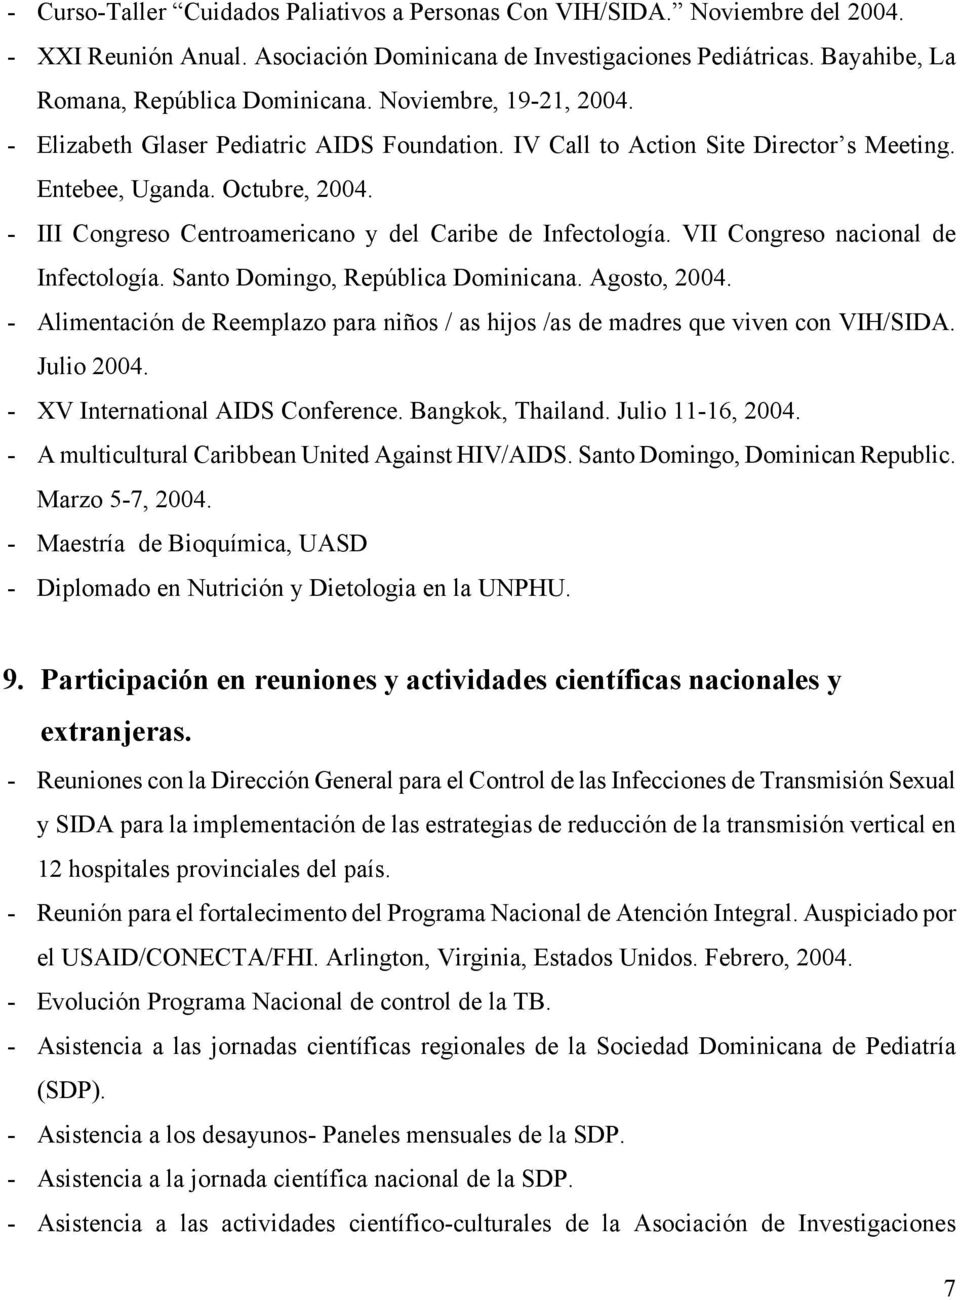 - III Congreso Centroamericano y del Caribe de Infectología. VII Congreso nacional de Infectología. Santo Domingo, República Dominicana. Agosto, 2004.